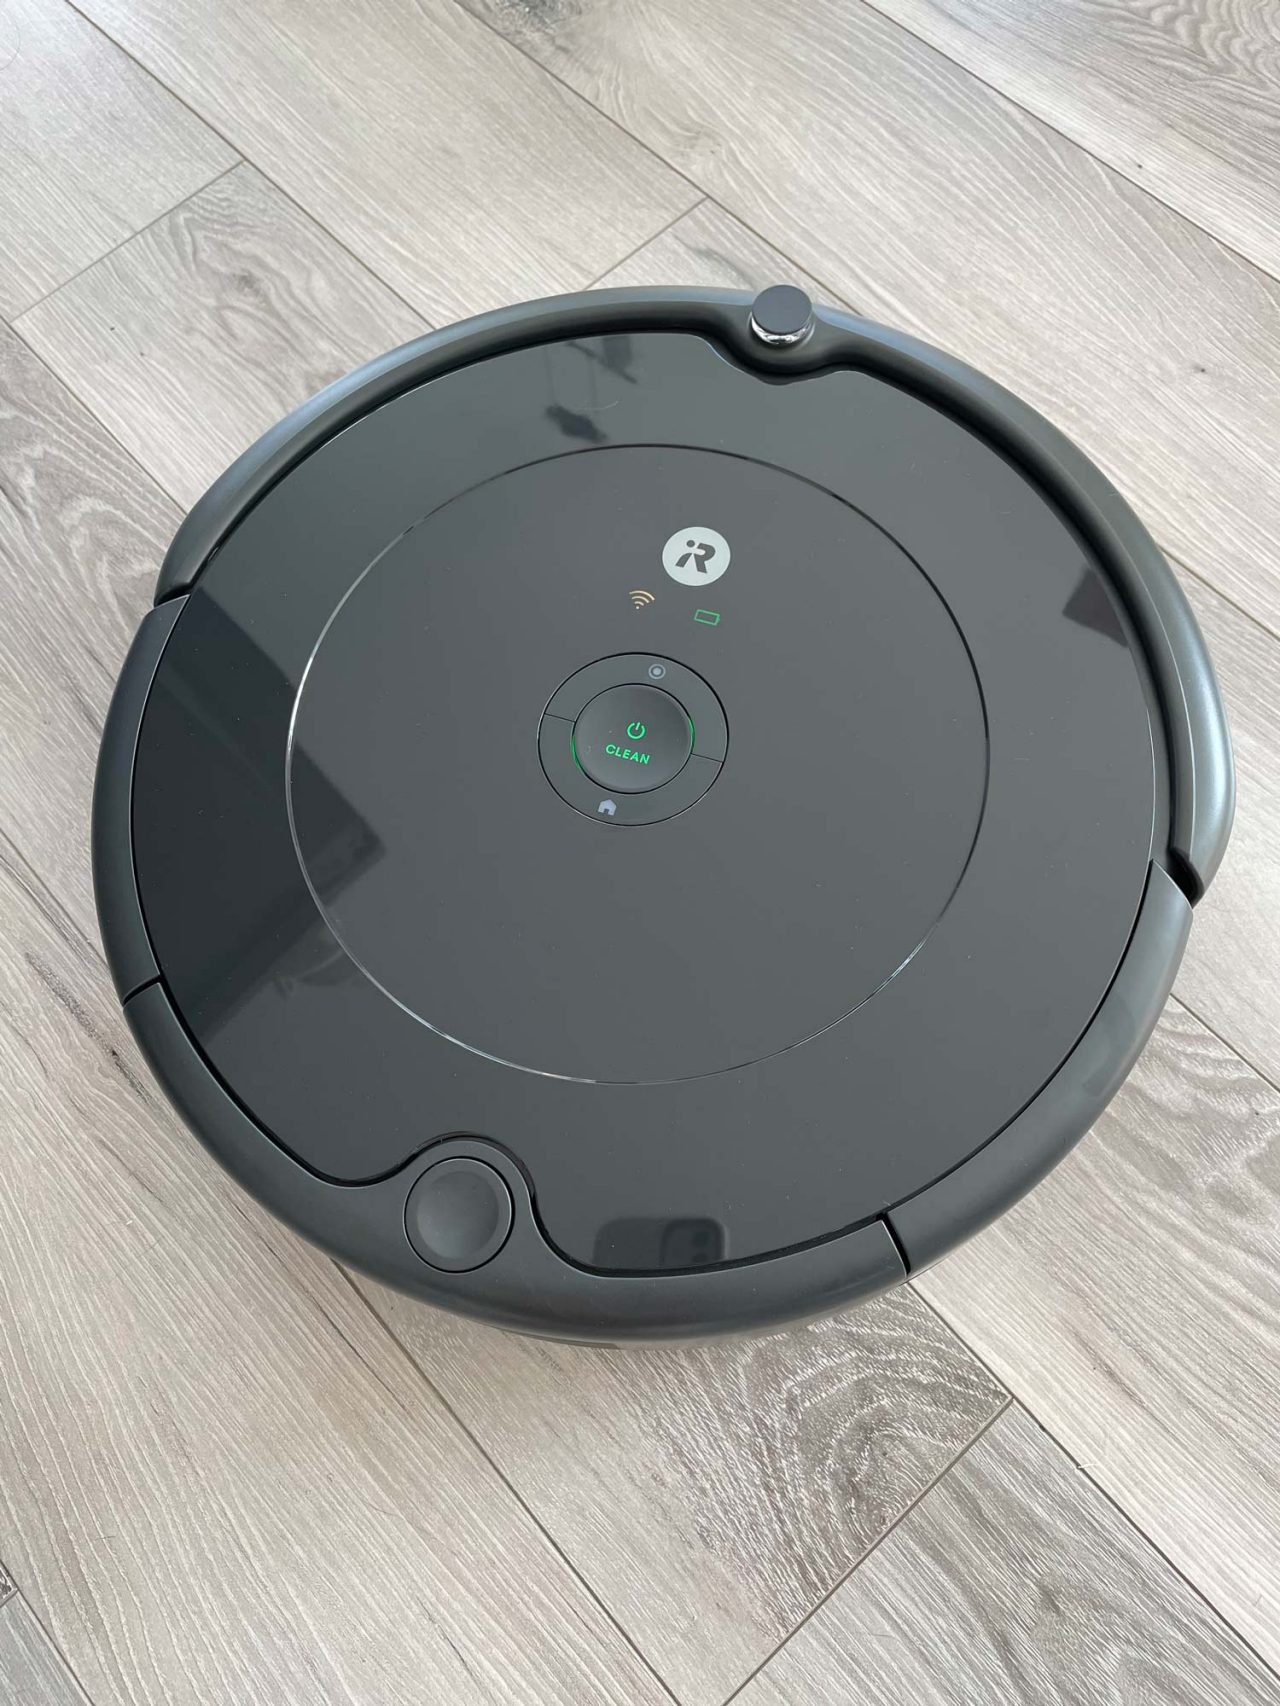 Aspirateur-robot : -38% sur le modèle iRobot Roomba 692 chez